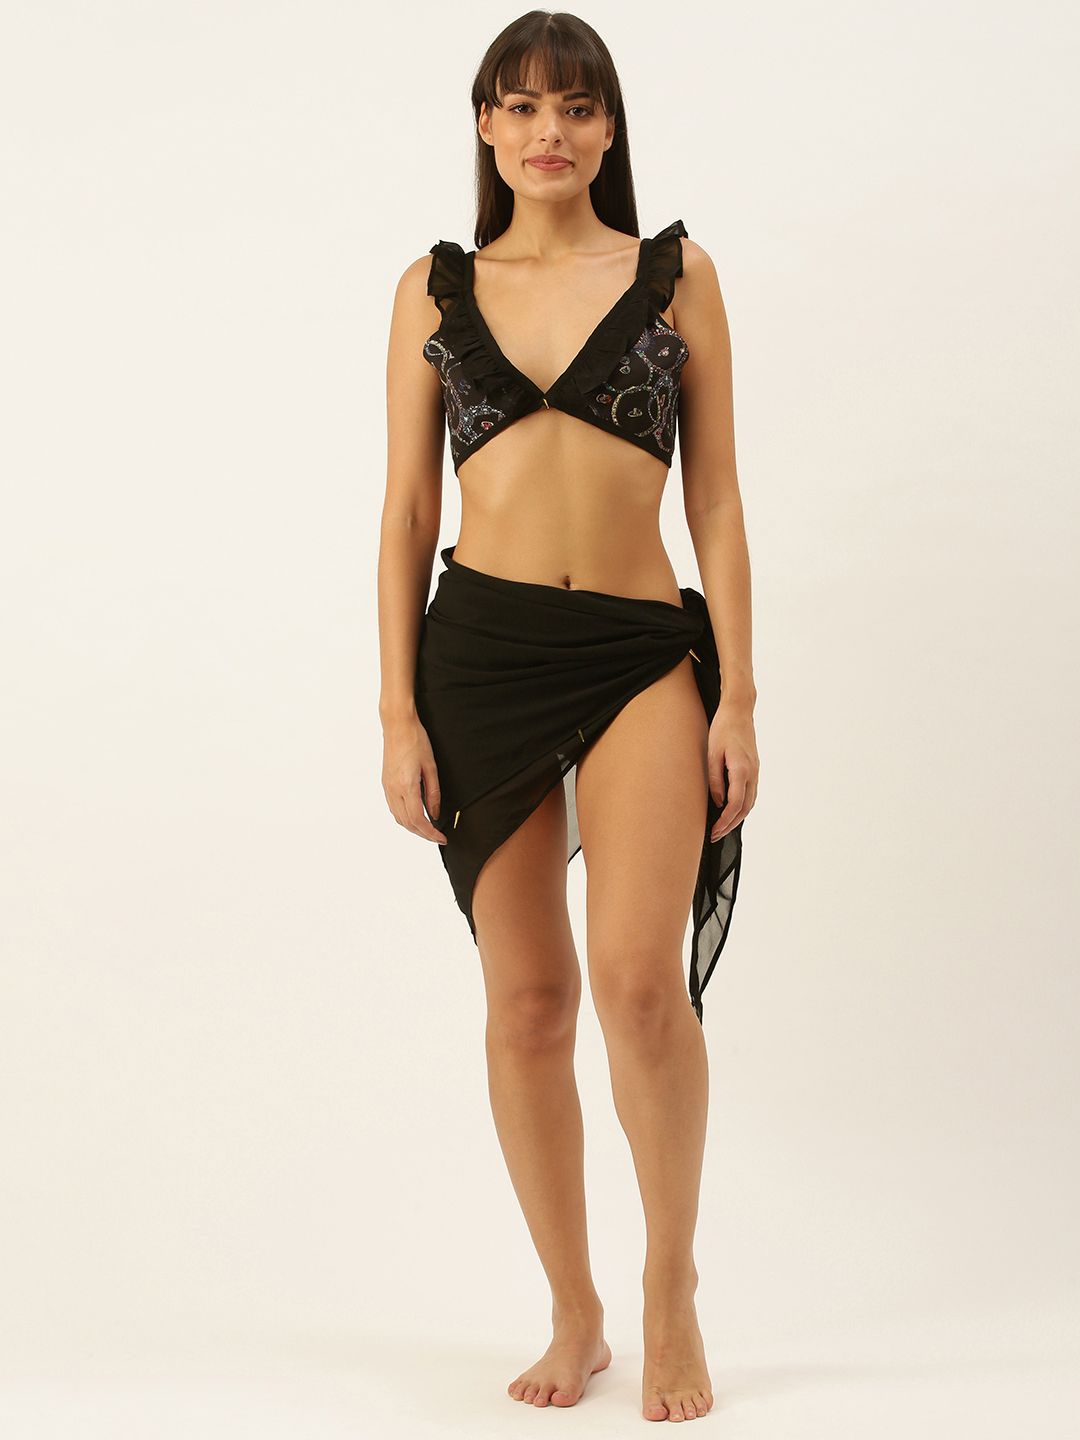 SECRETS BY ZEROKAATA Black Abstract Print Frill Bikini Set With Wraparound Sarong Price in India